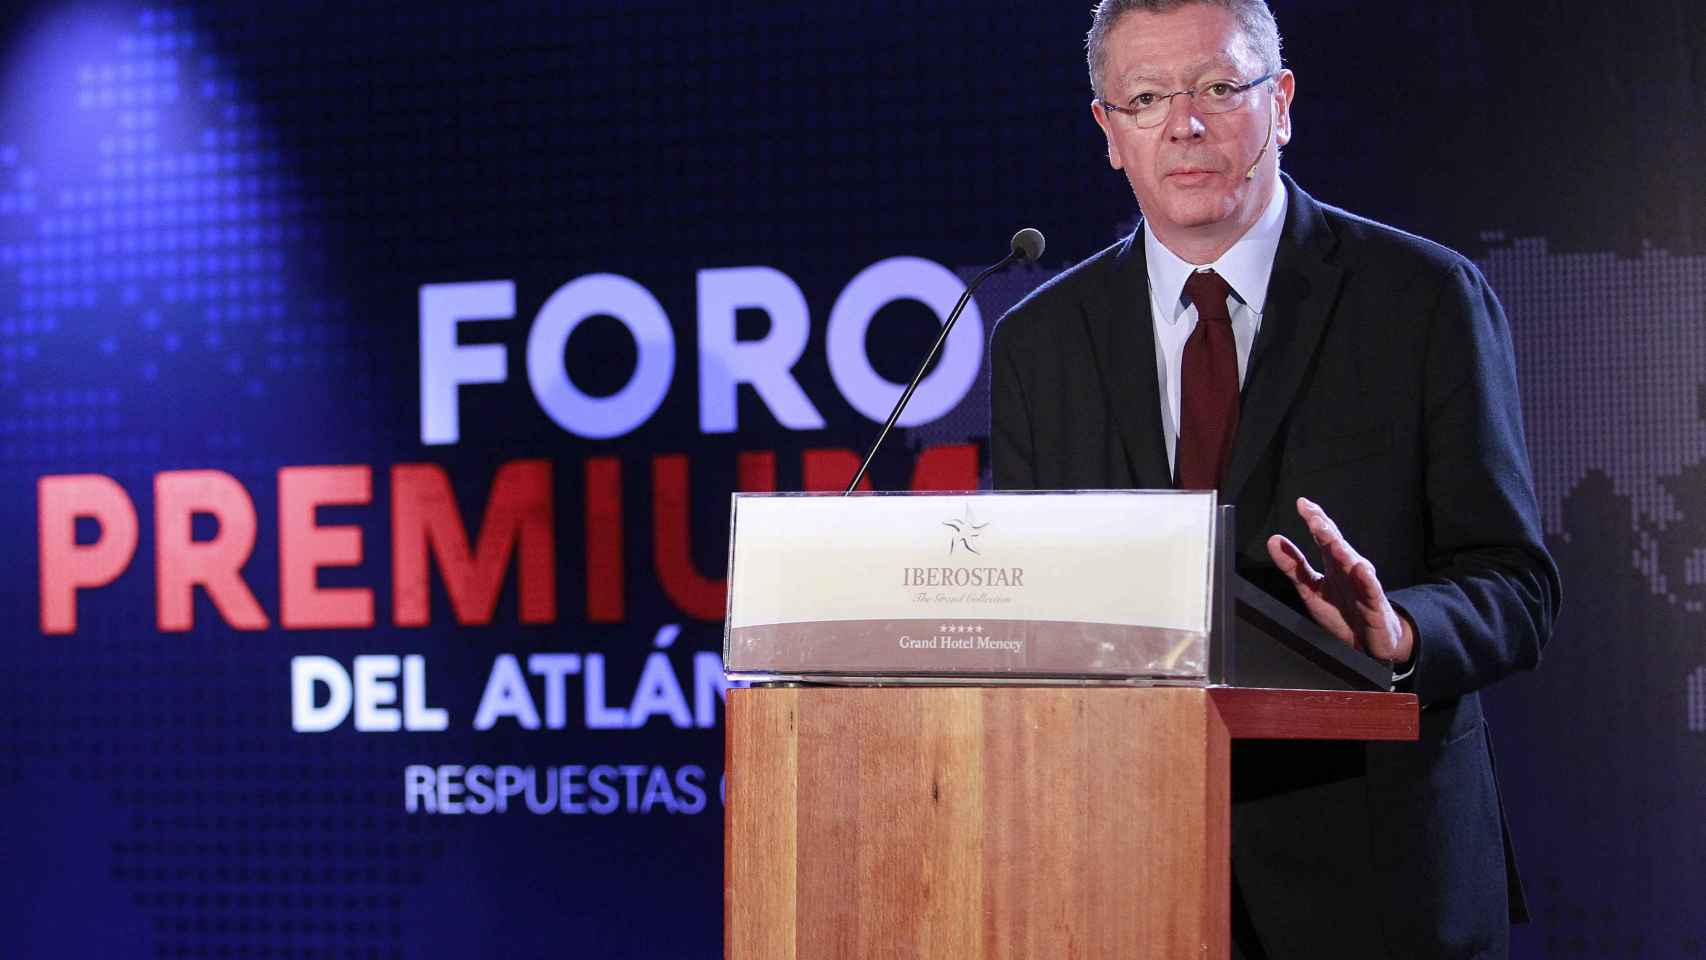 Alberto Riuiz Gallardón durante su intervención en el Foro Premium del Atlántico